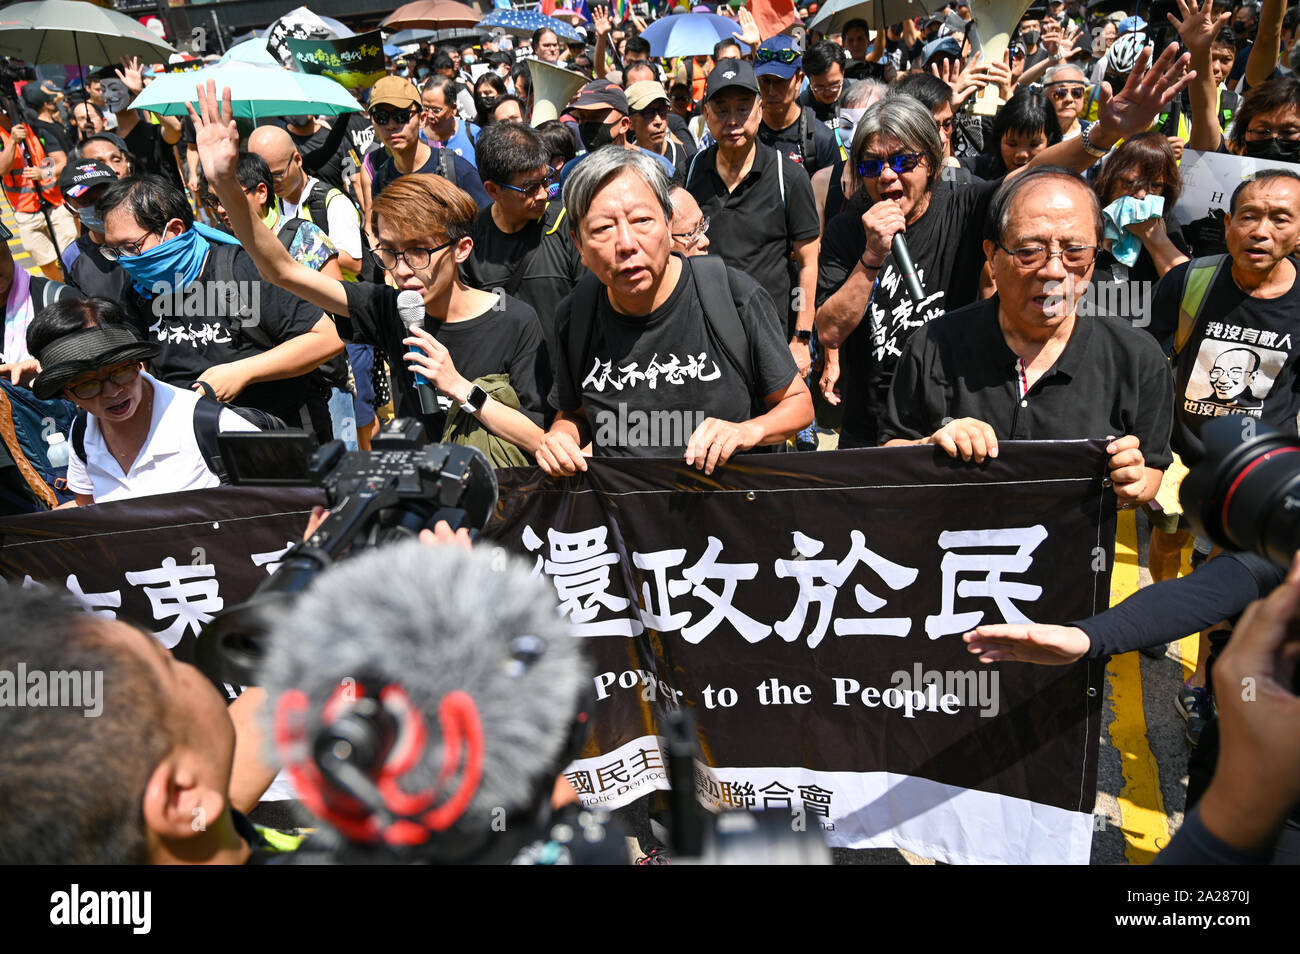 Hong Kong, Hong Kong SAR. 01 Okt, 2019. Ehemalige Politiker Lee Cheuk-yan und andere Politiker und Aktivisten führen eine Kundgebung in Hongkong am 1. Oktober 2019. Foto von Thomas Maresca/UPI Quelle: UPI/Alamy leben Nachrichten Stockfoto